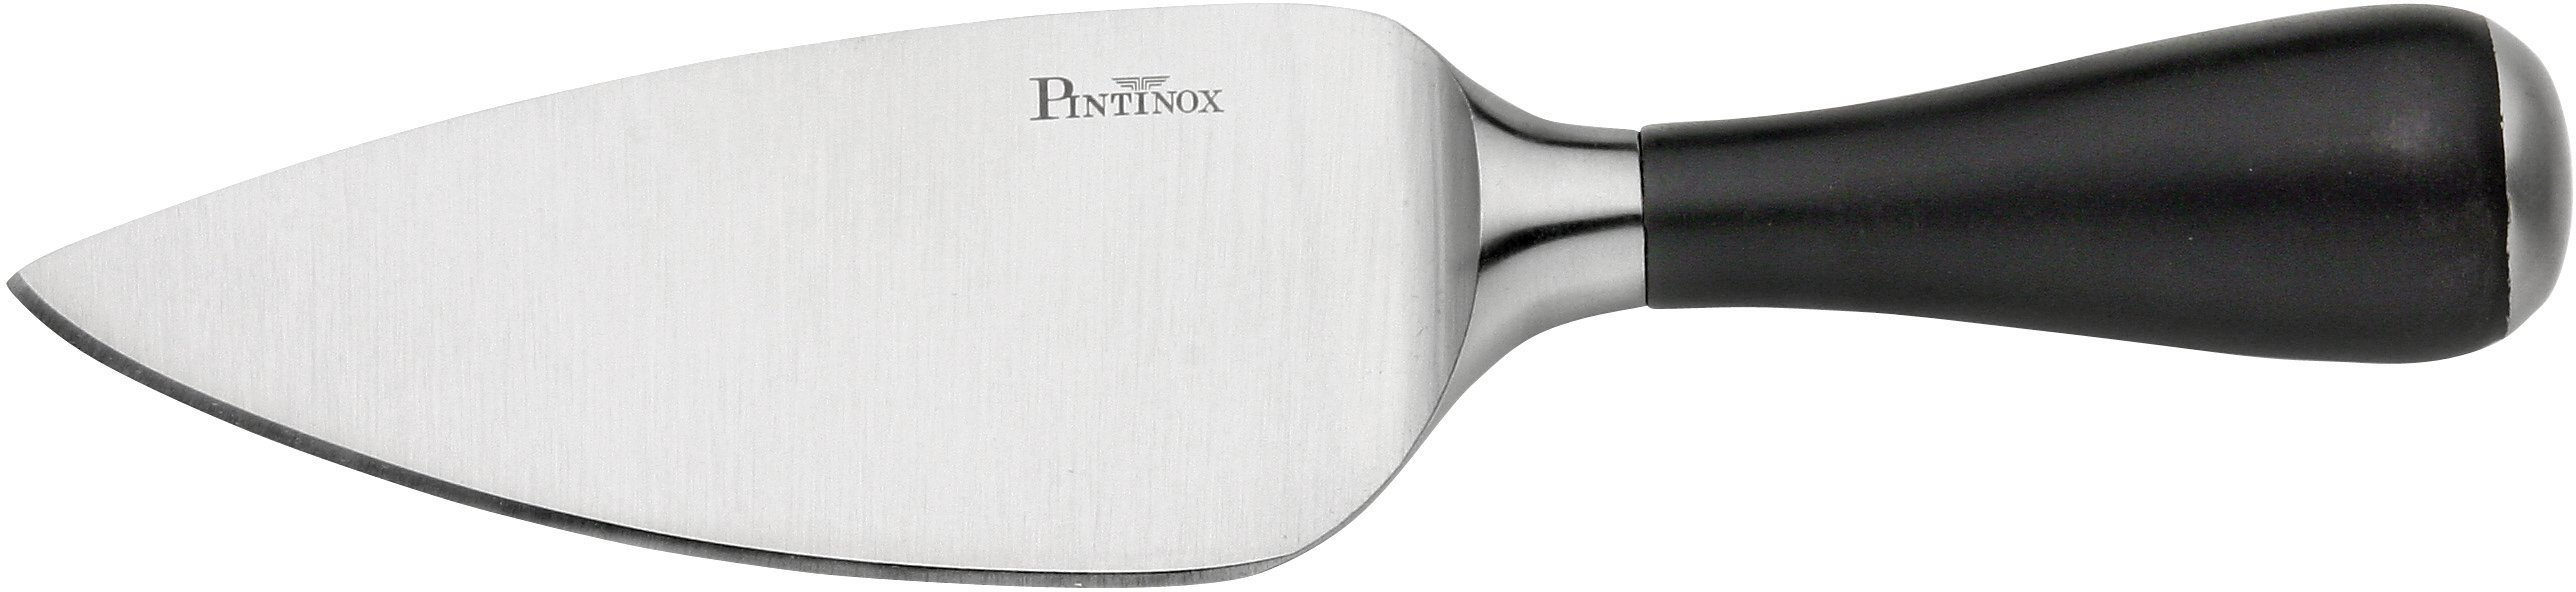 PINTINOX Allzweckmesser Coltelli Professional, Parmesankäsemesser und Edelstahl/Kunststoff Gemüsemesser